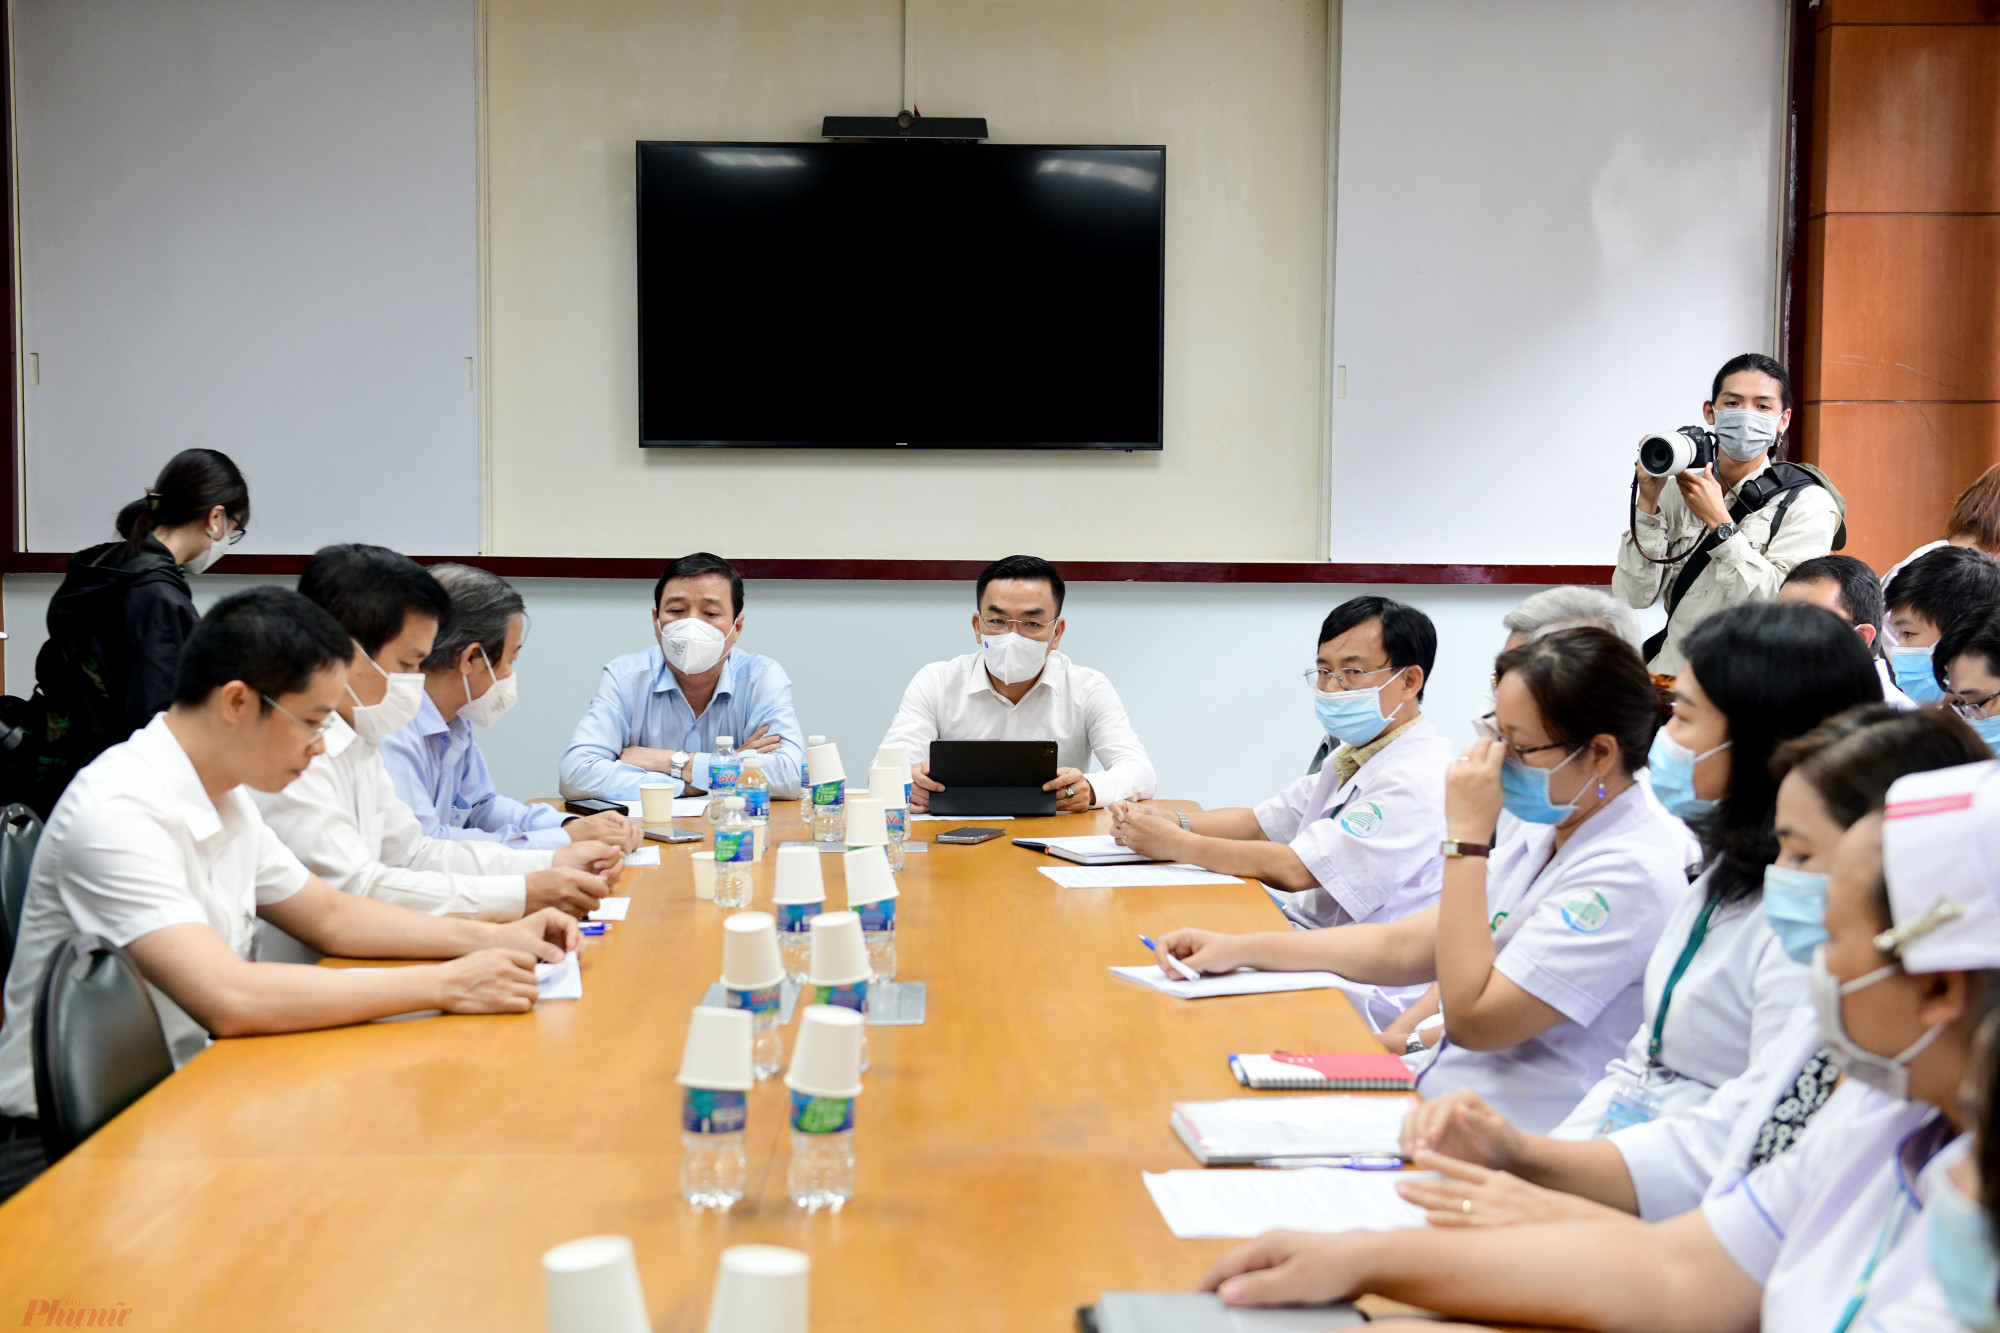 Chiều 6/10, TS Nguyễn Lương Tâm, Cục trưởng Cục Y tế Dự phòng (Bộ Y tế) cùng đoàn đã có chuyến khảo sát về công tác phòng chống bệnh đậu mùa khỉ tại TPHCM sau khi ca bệnh đầu tiên trên cả nước được phát hiện.